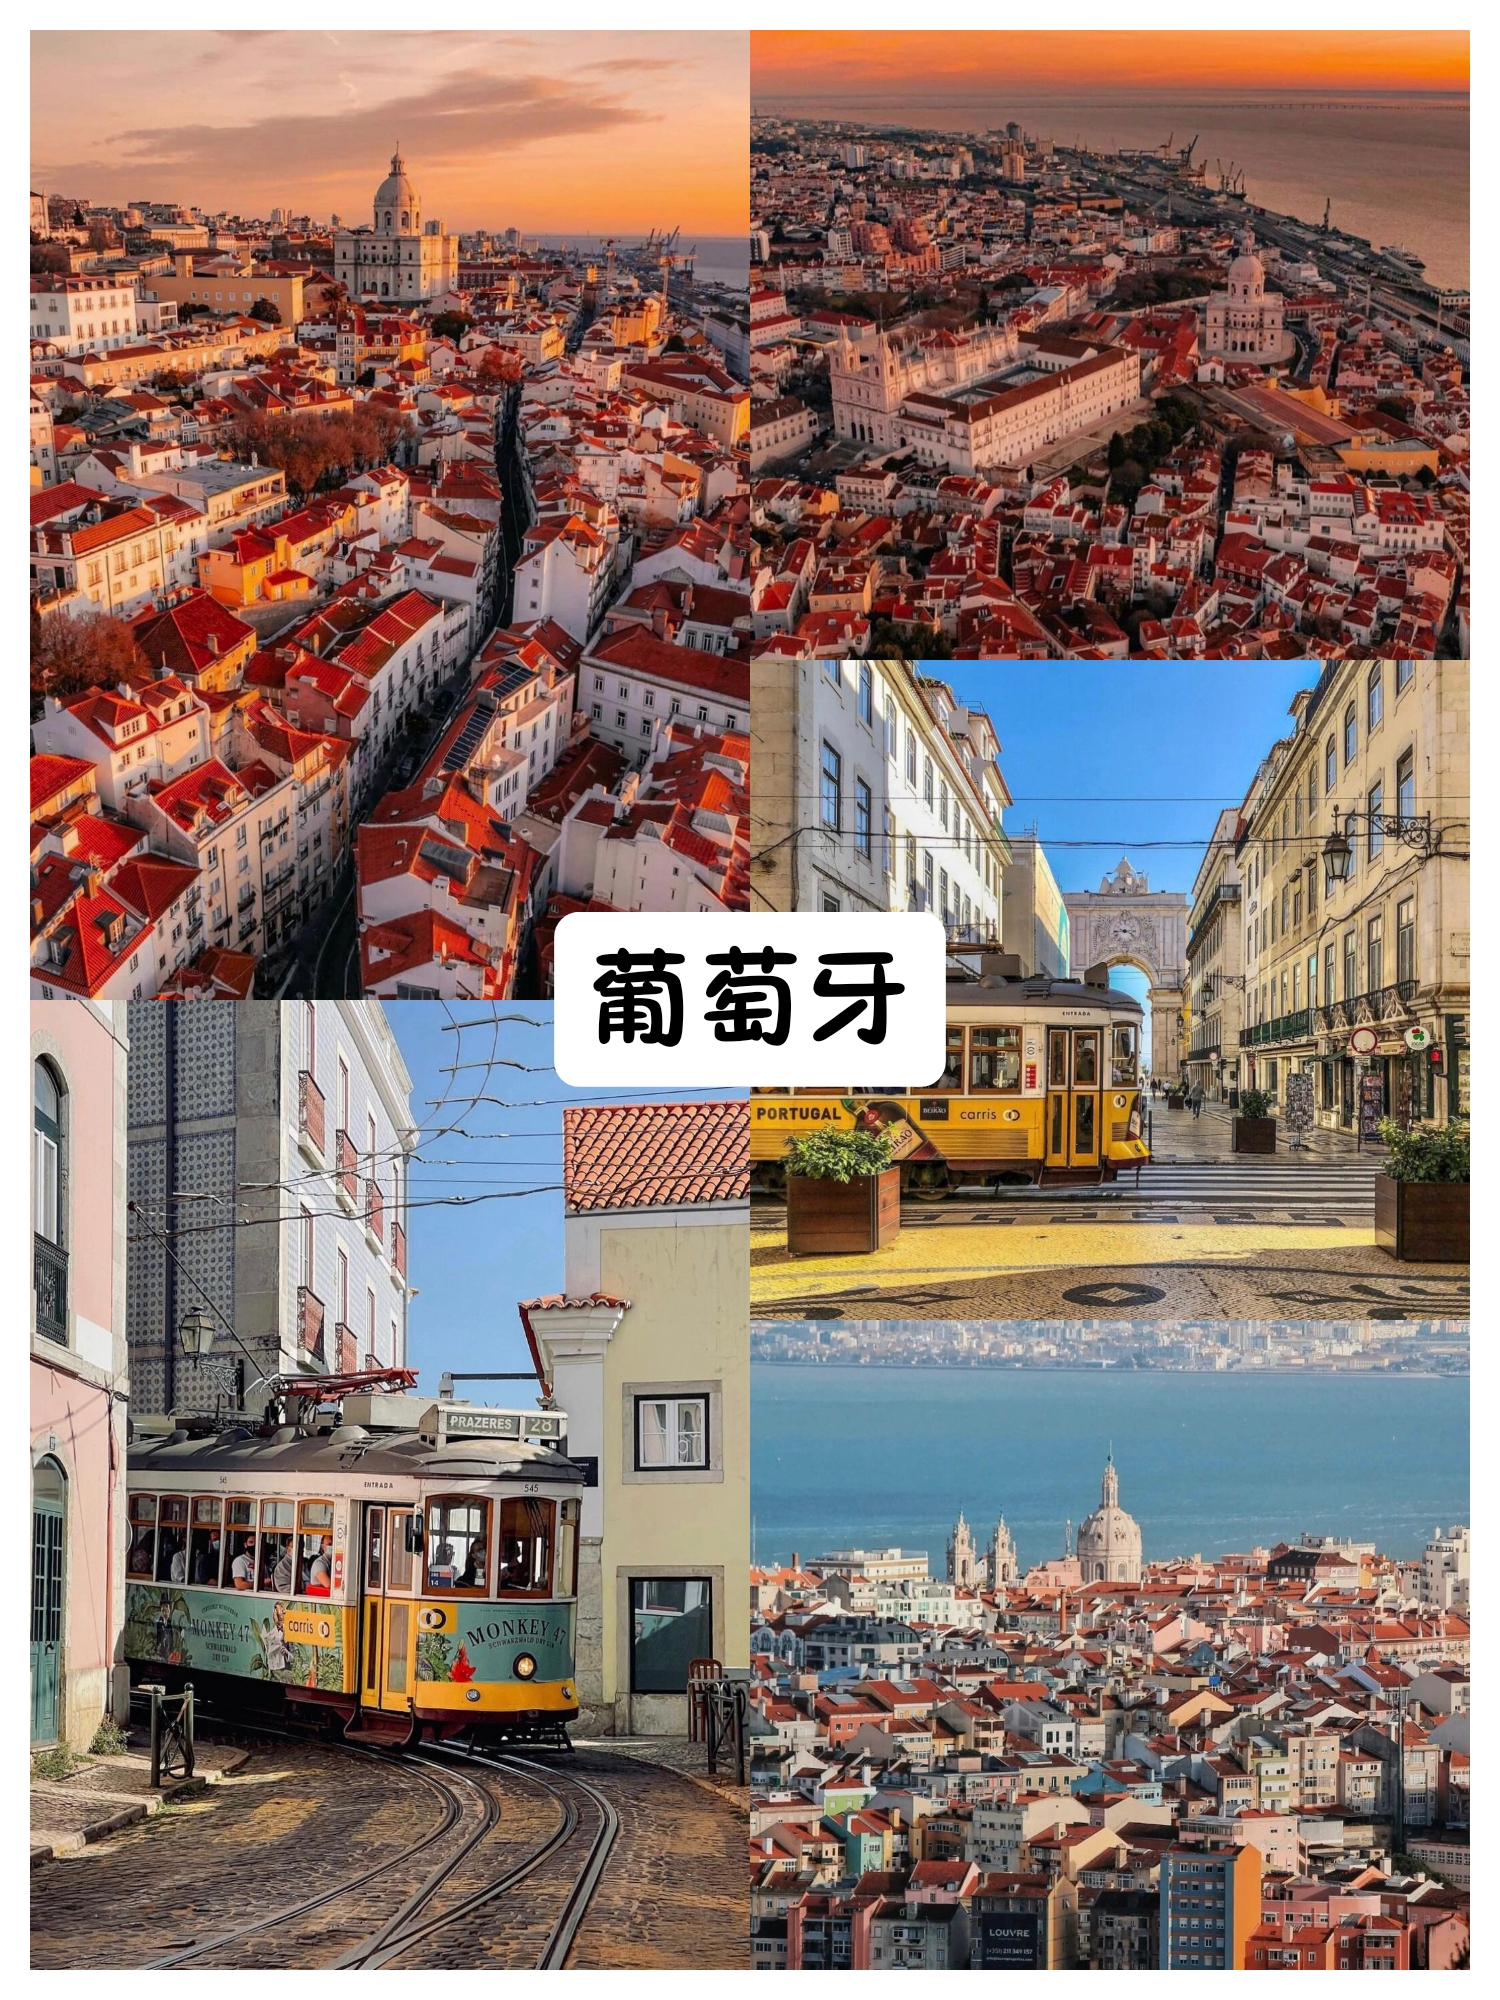 葡萄牙第二大城市💐波尔图也太chill了吧❗️